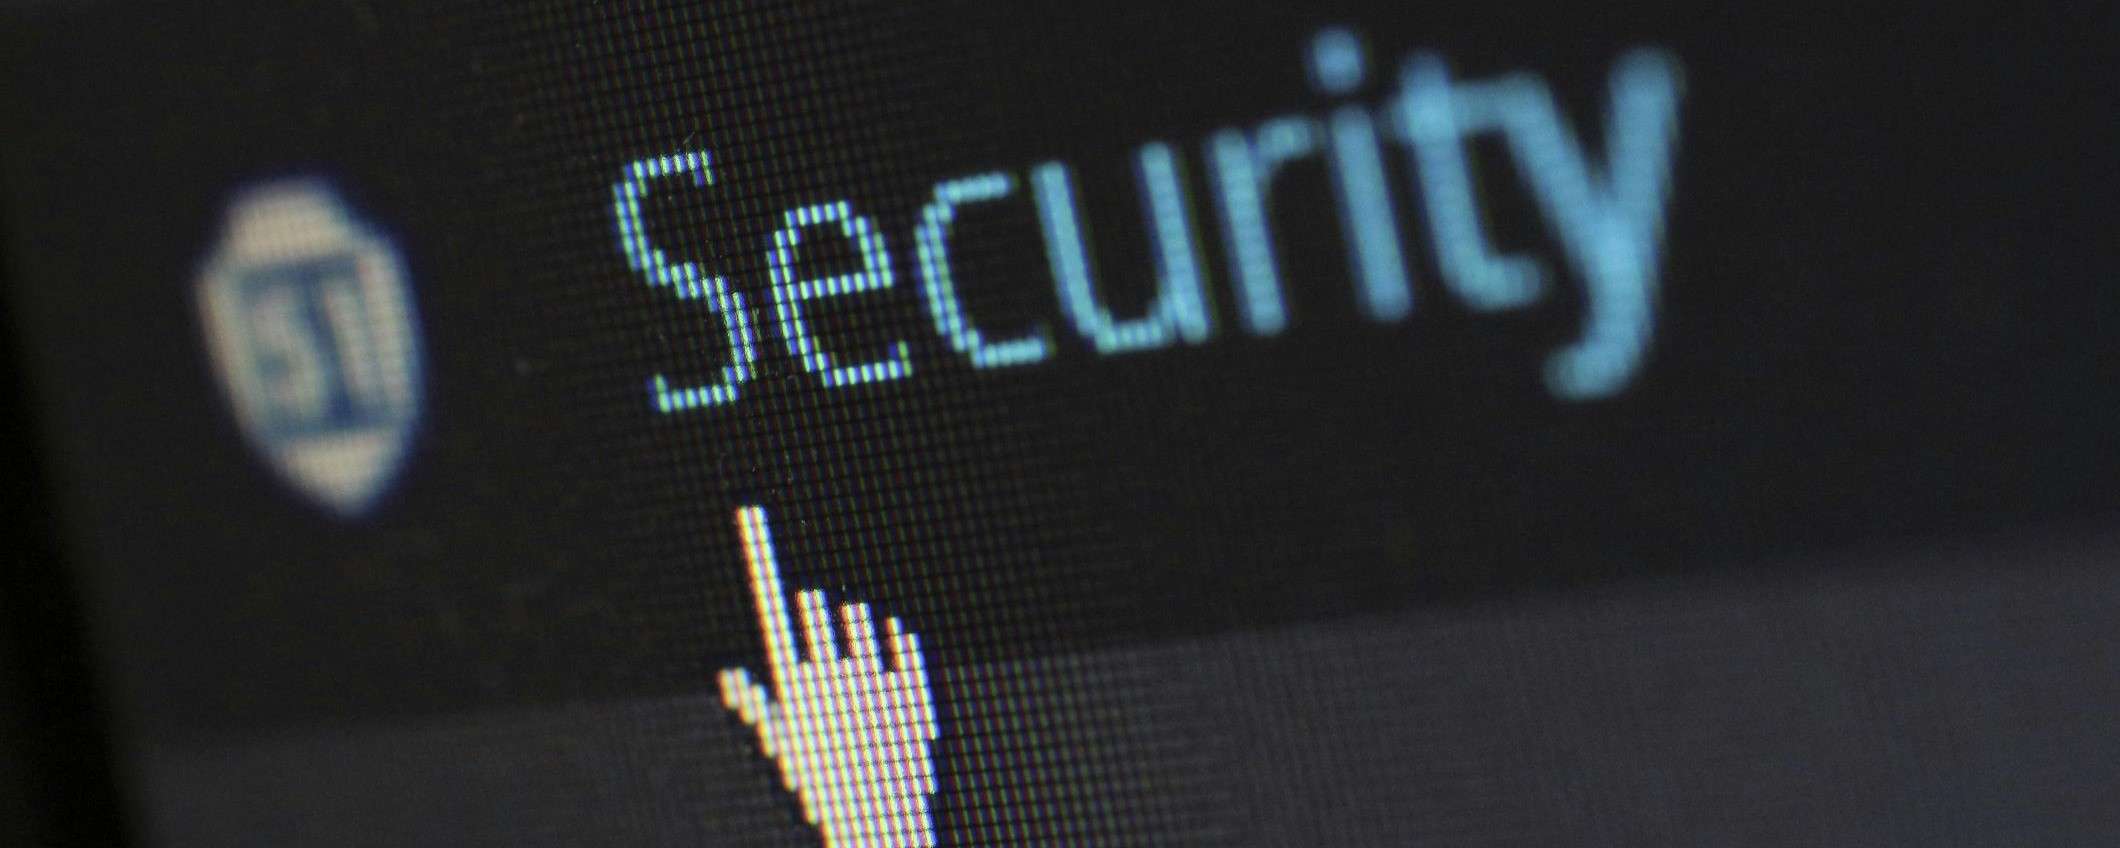 Acquista Avira Internet Security e ottieni uno sconto del 40%